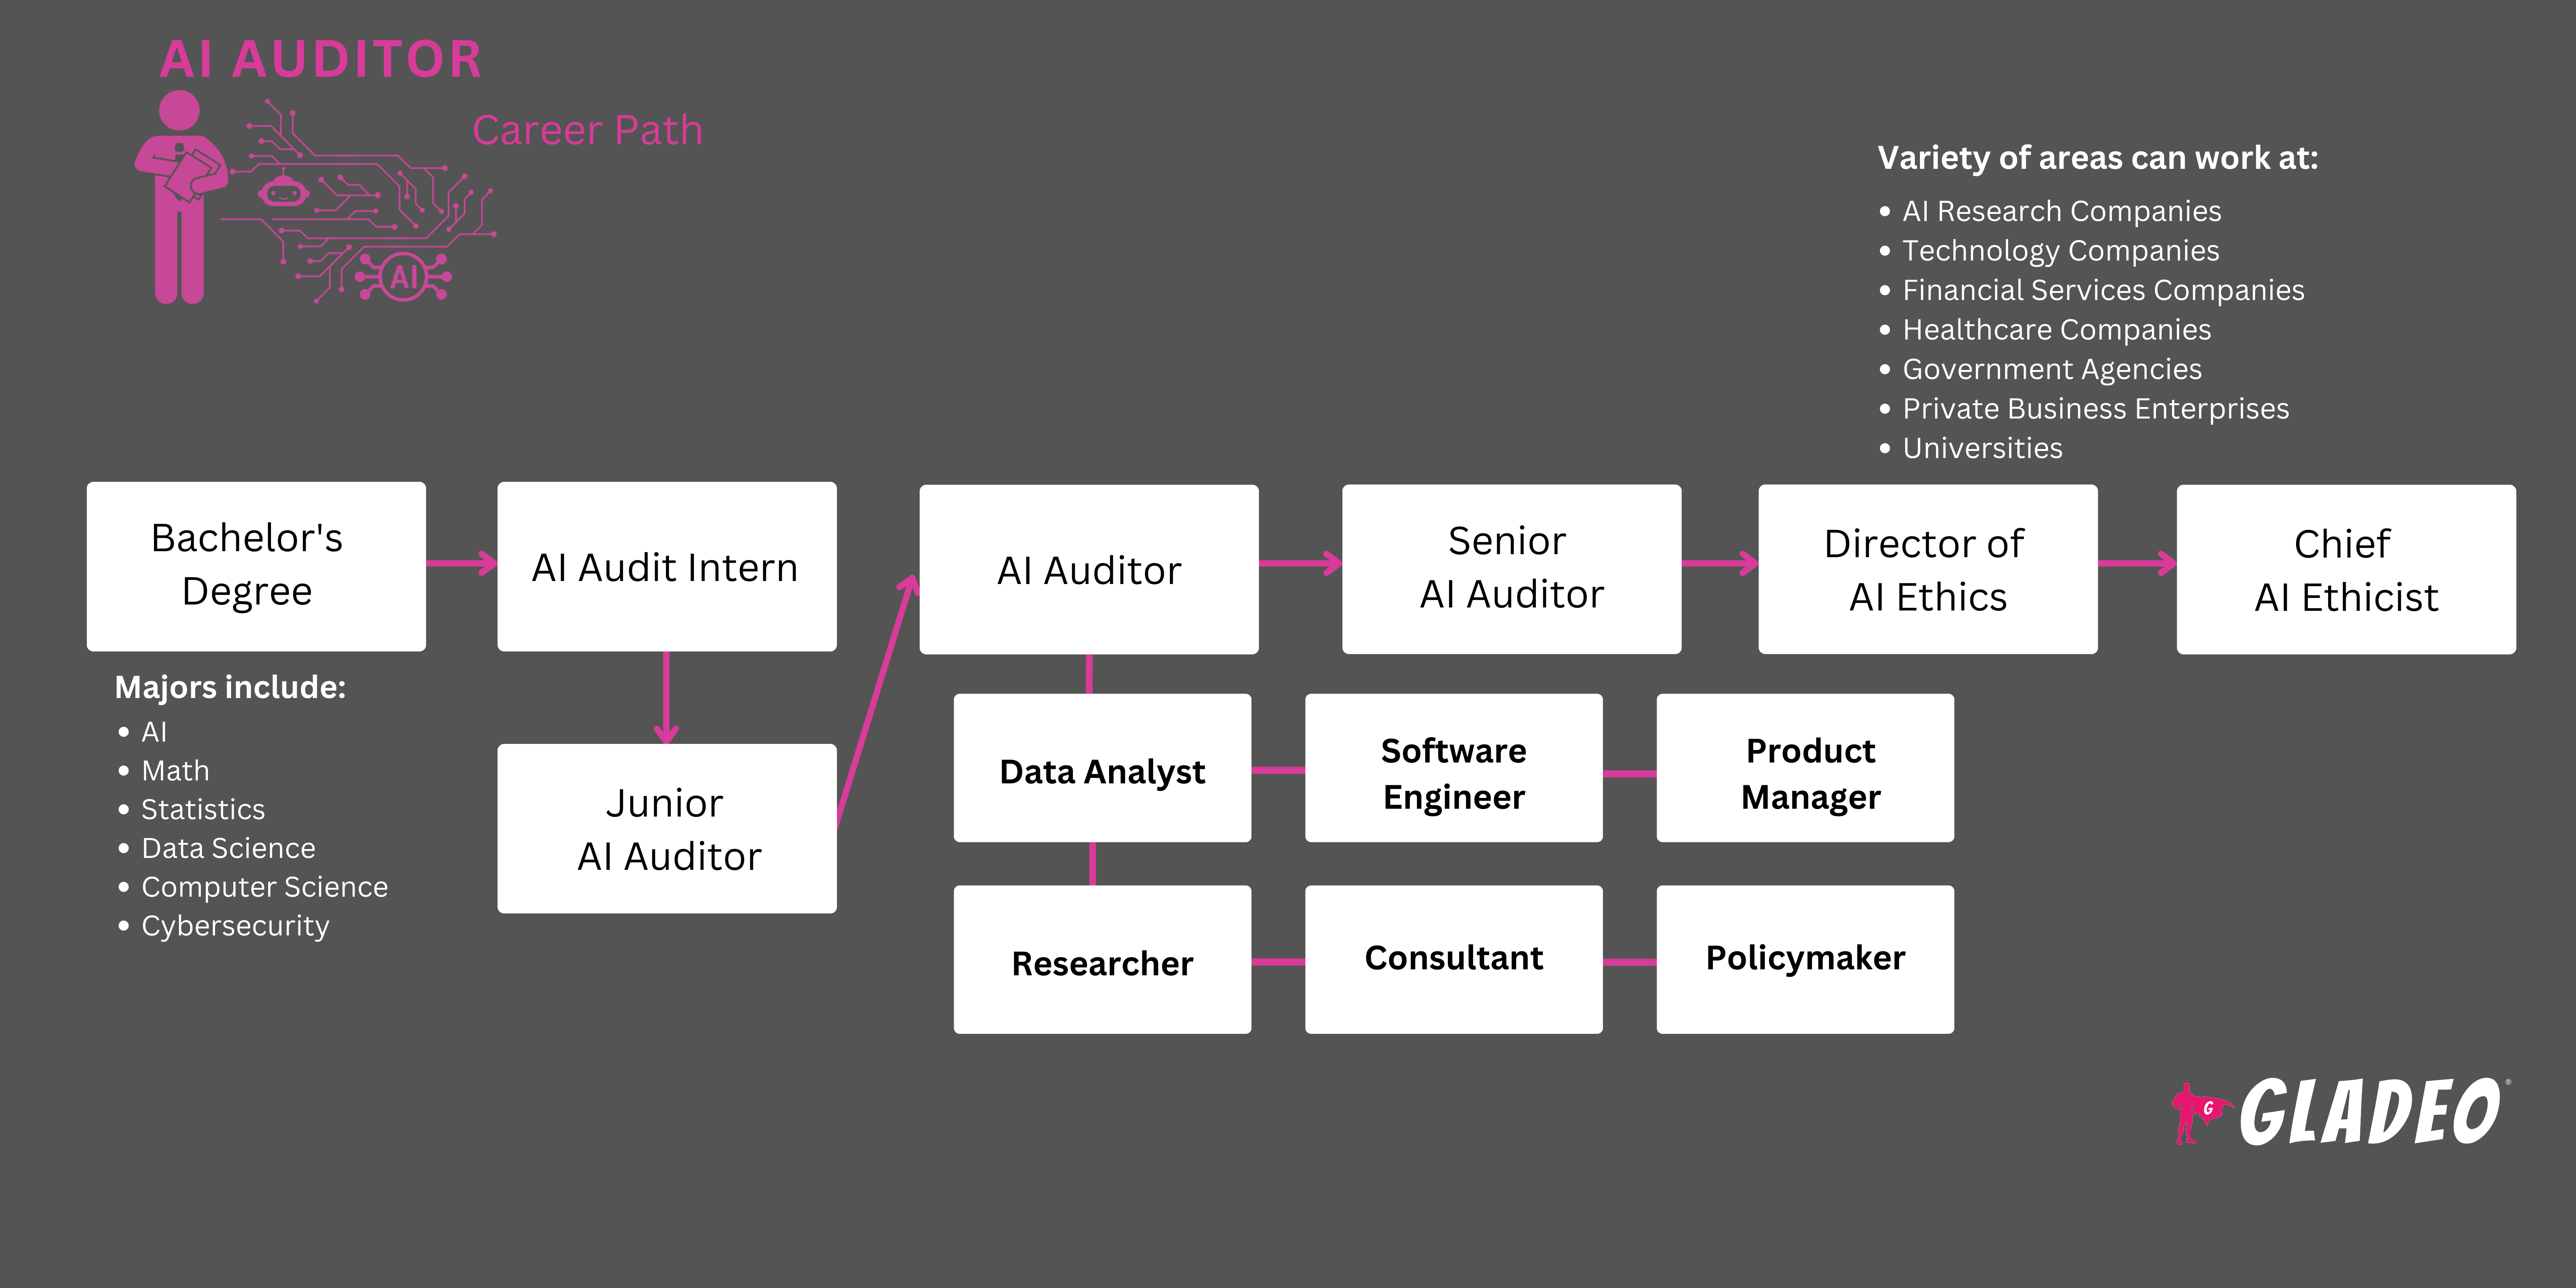 Roadmap ng AI Auditor